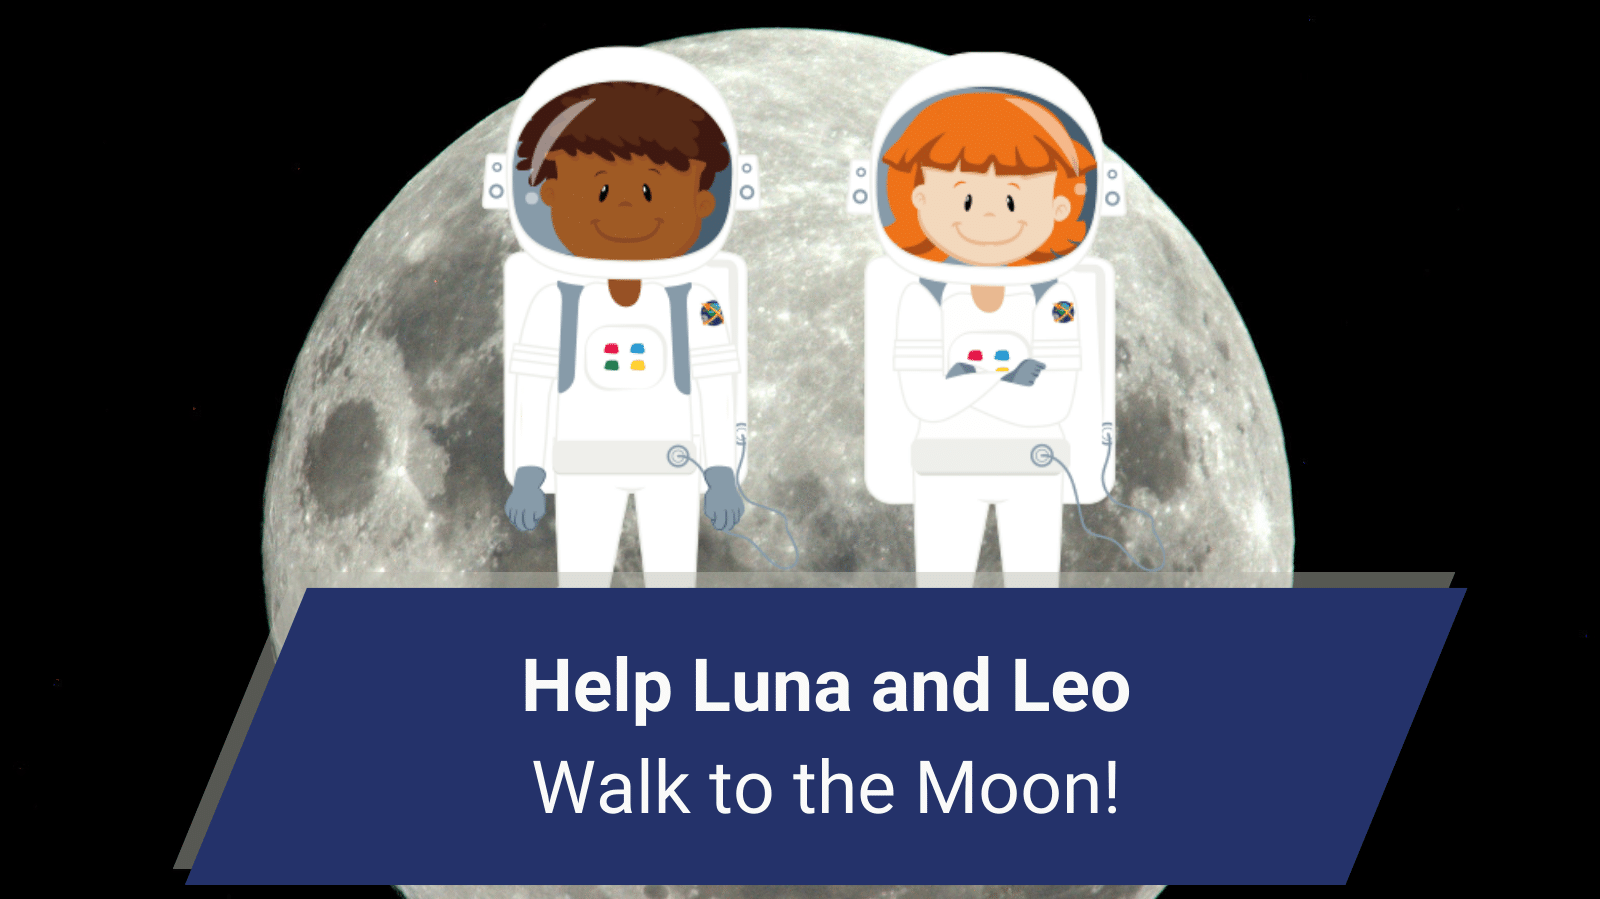 Palīdziet Lunai un Leo doties uz Mēnesi!